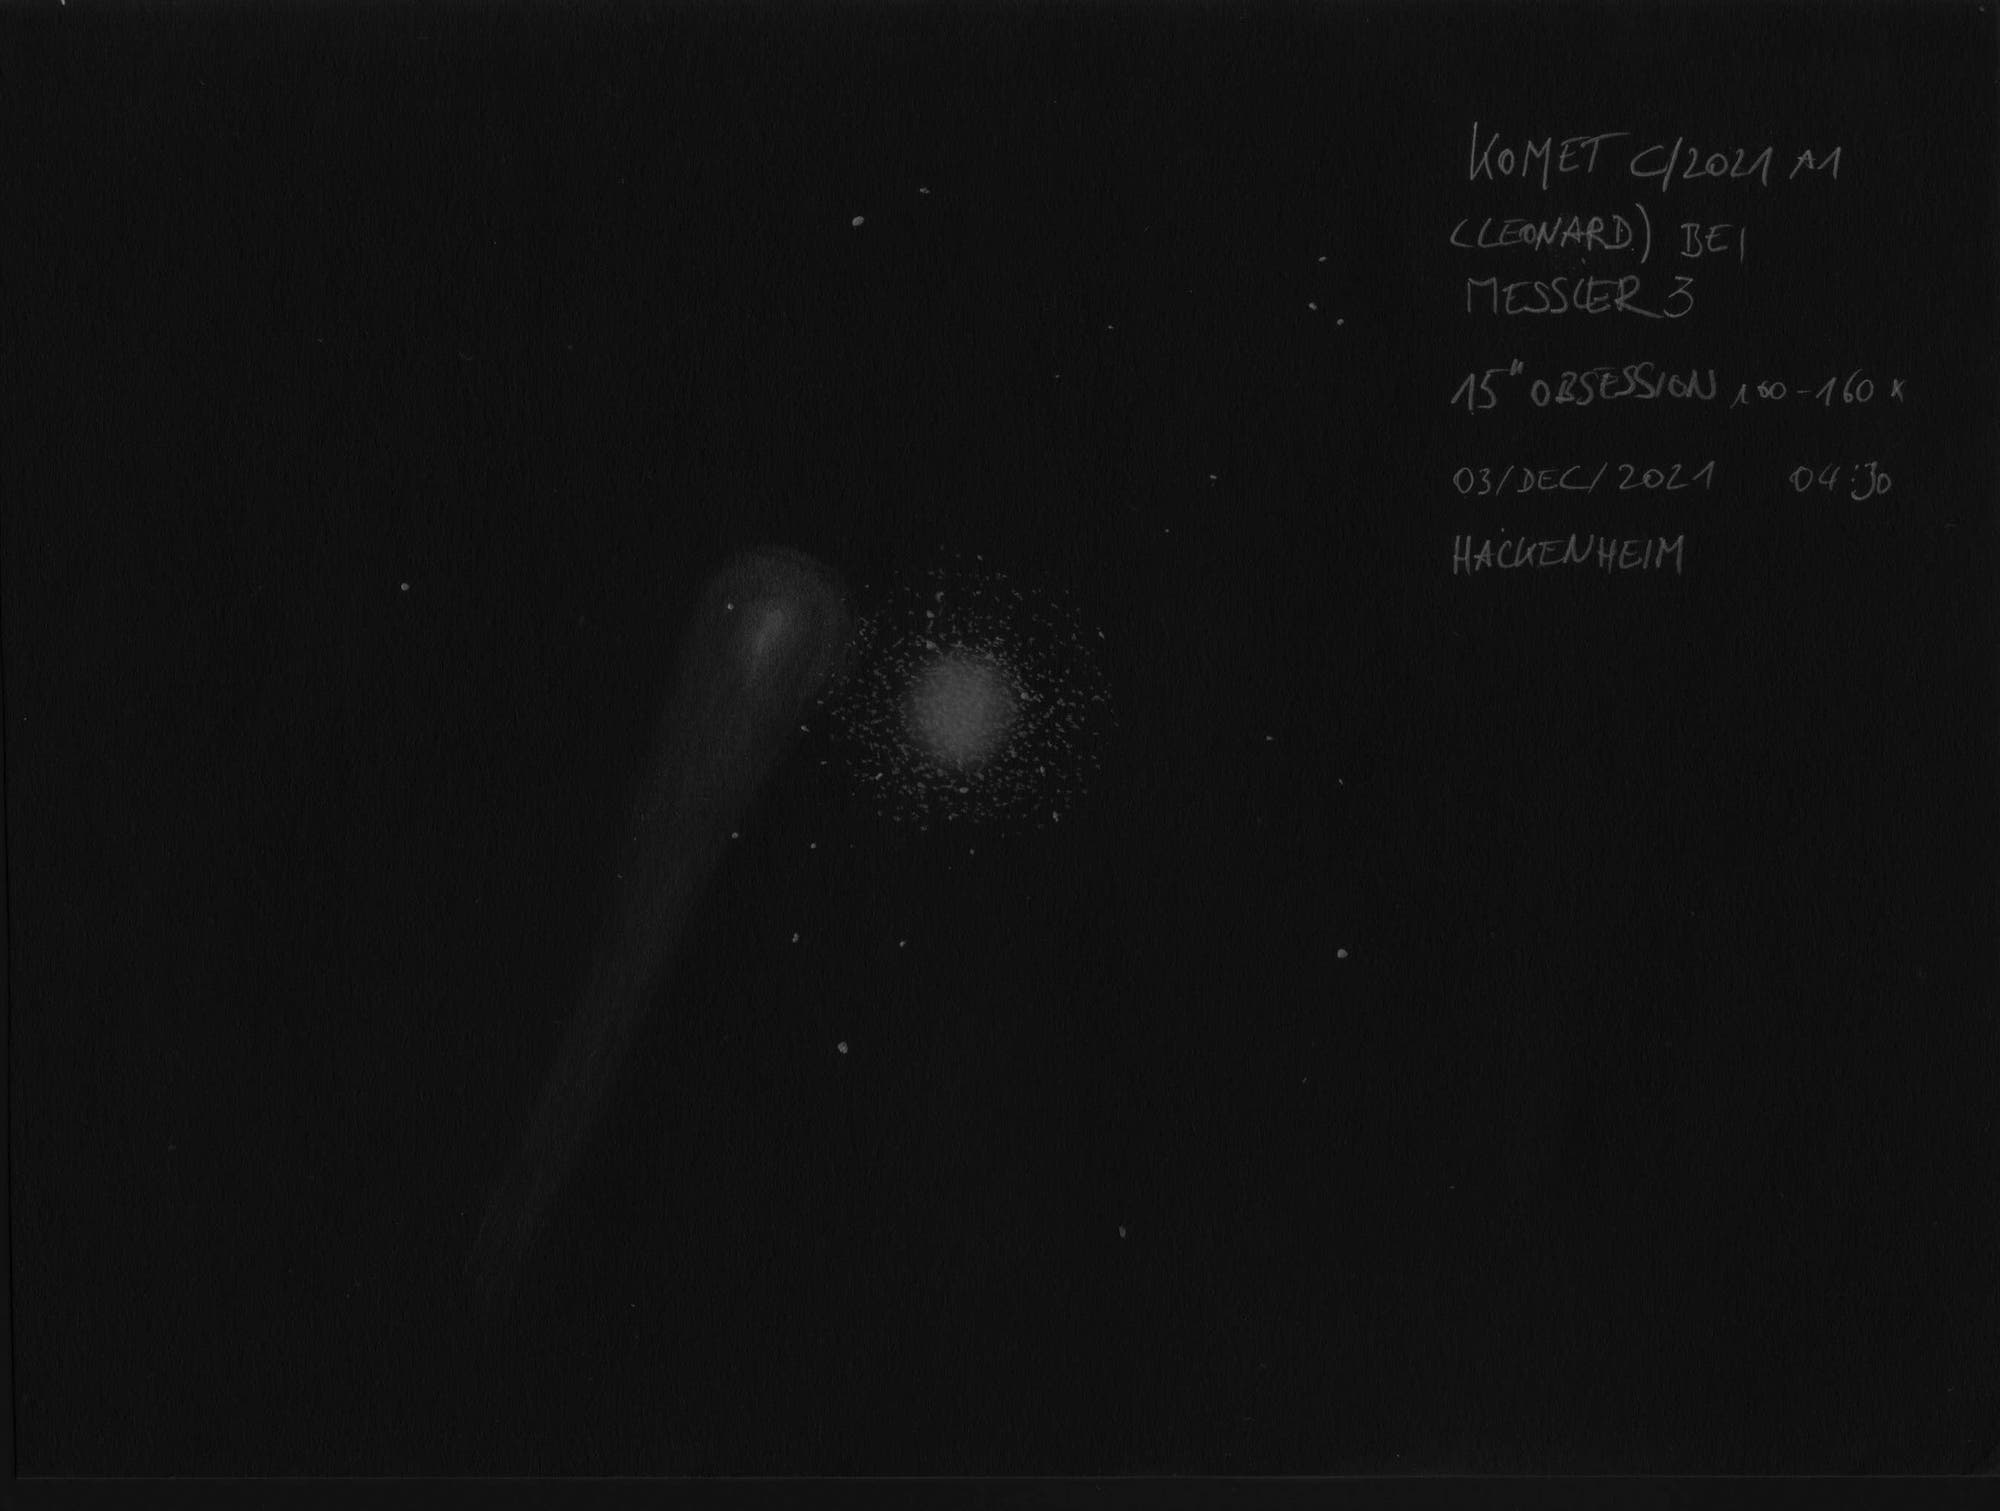 Zeichnung Komet C/2021 A1 (Leonard) bei Messier 3